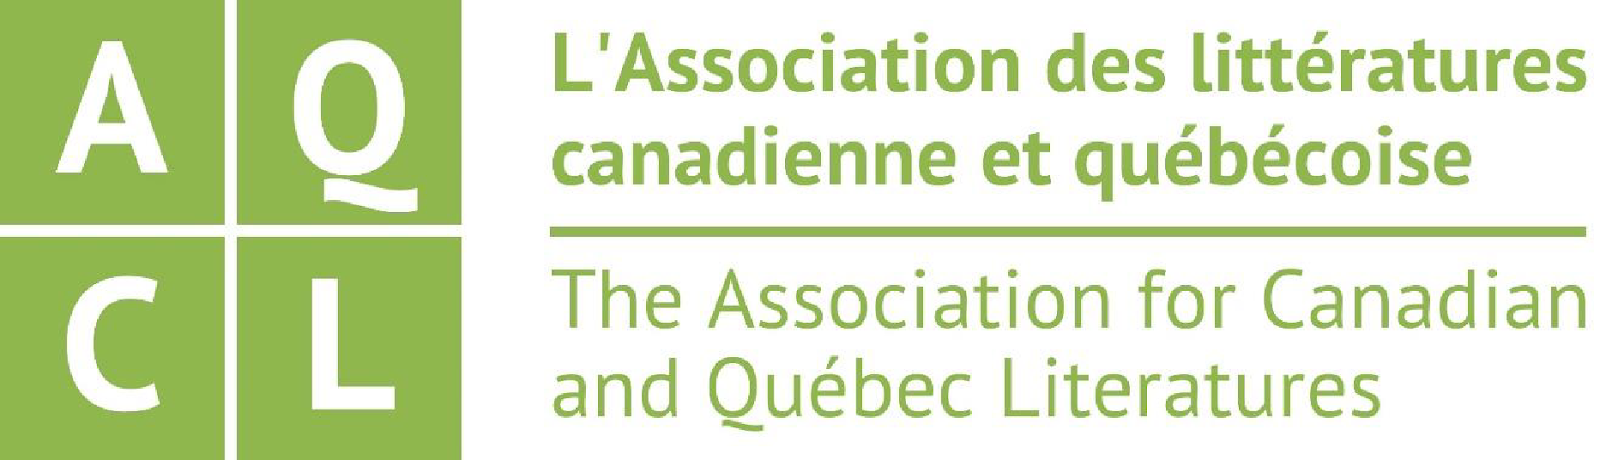 Green logo on white background, with text: "L'Association des littératures canadienne et québécoise | The Association for Canadian and Québec Literatures"